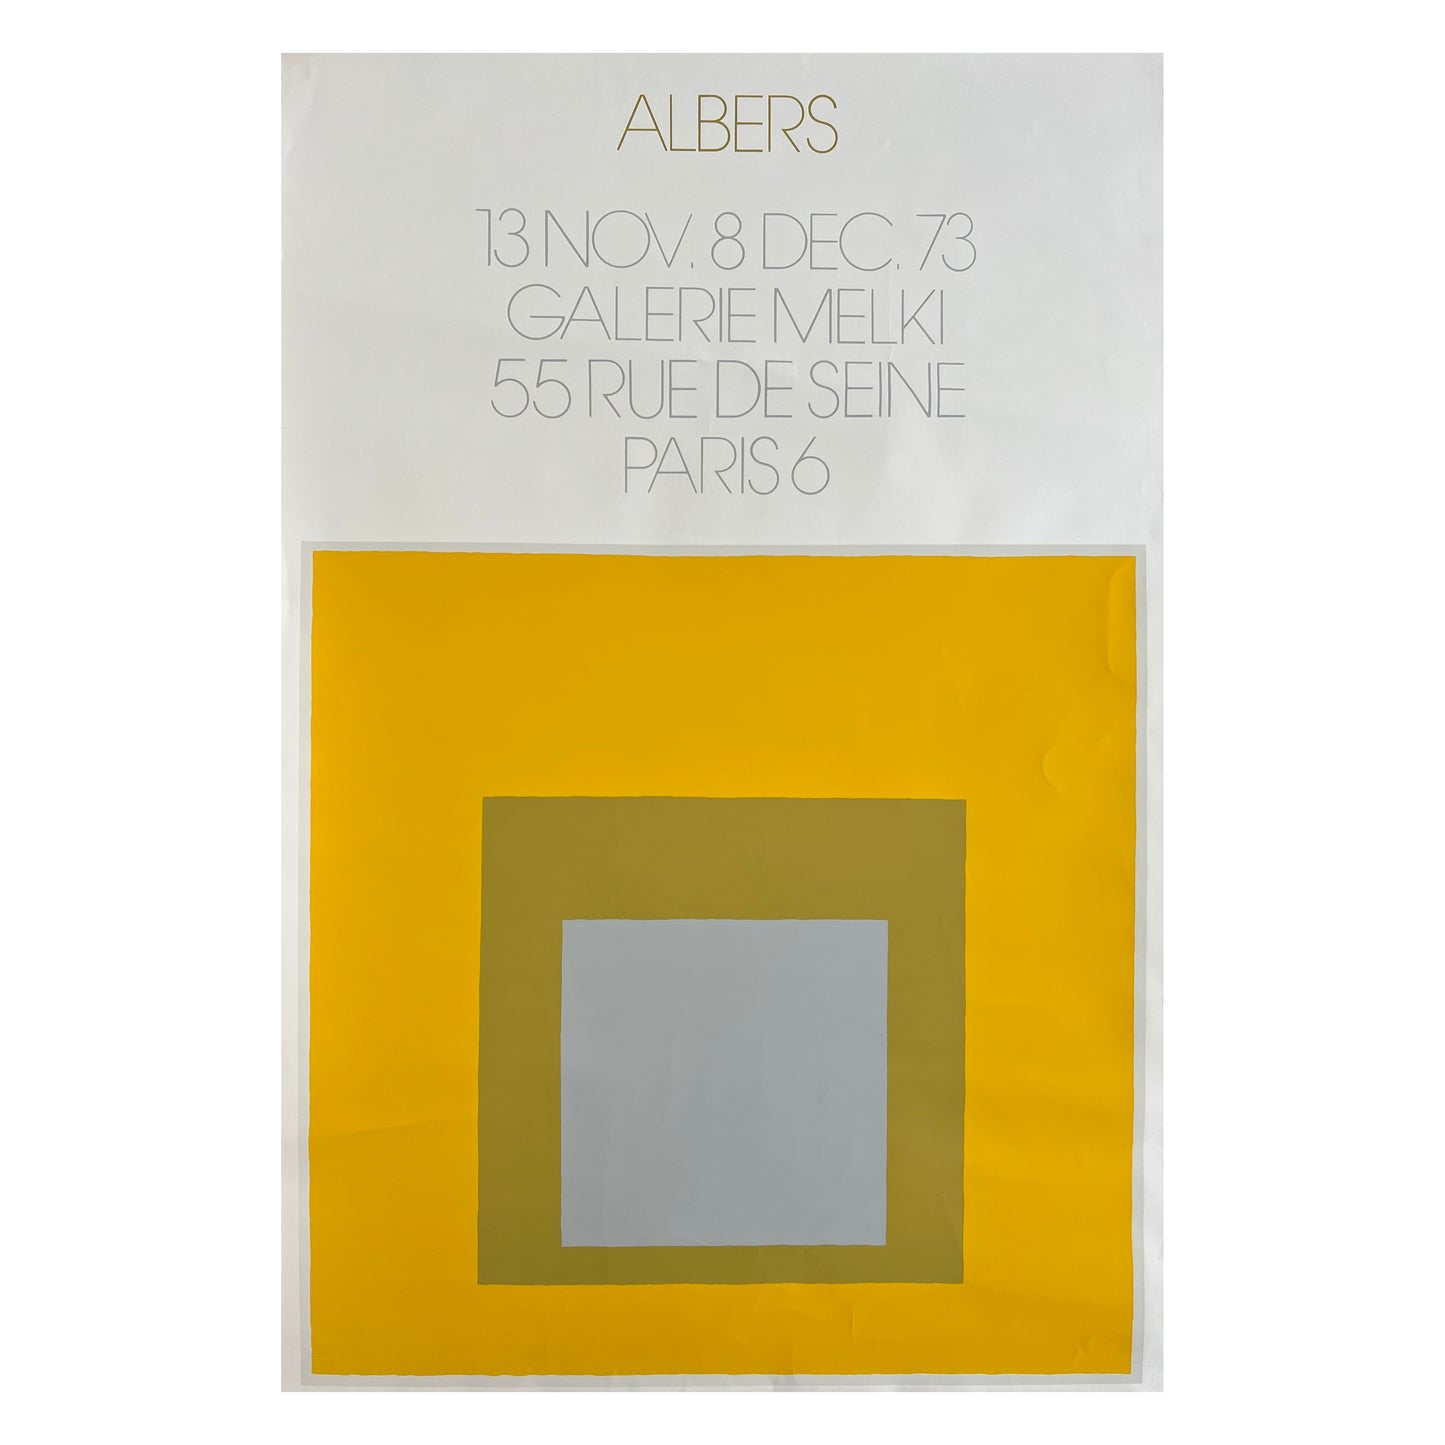 Josef Albers. “Galerie Melki”, 1973